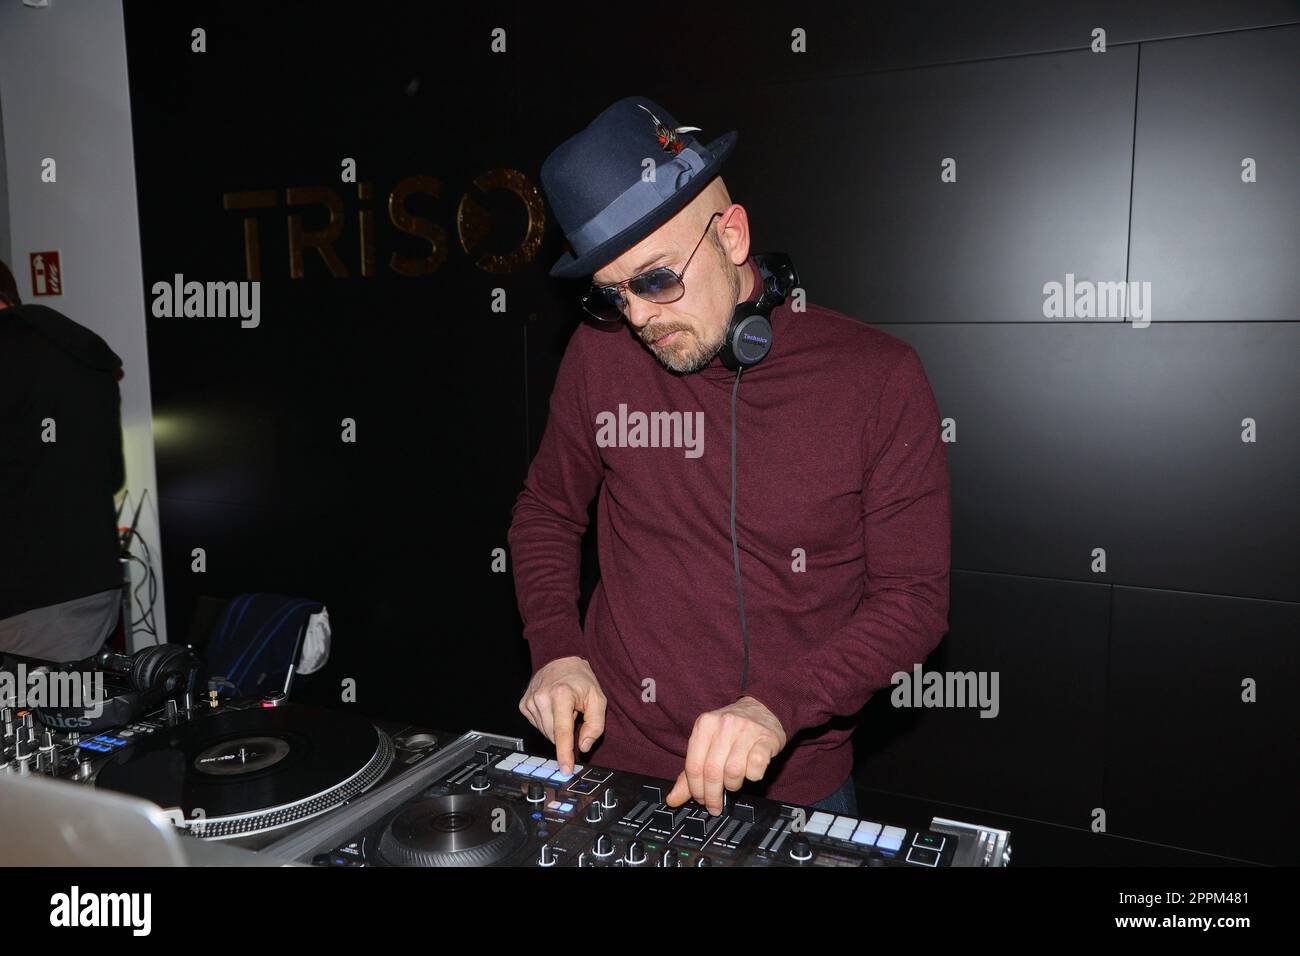 Jan Delay era DJ, Grand Opening Trisor, Amburgo, 25.01.2023 Foto Stock